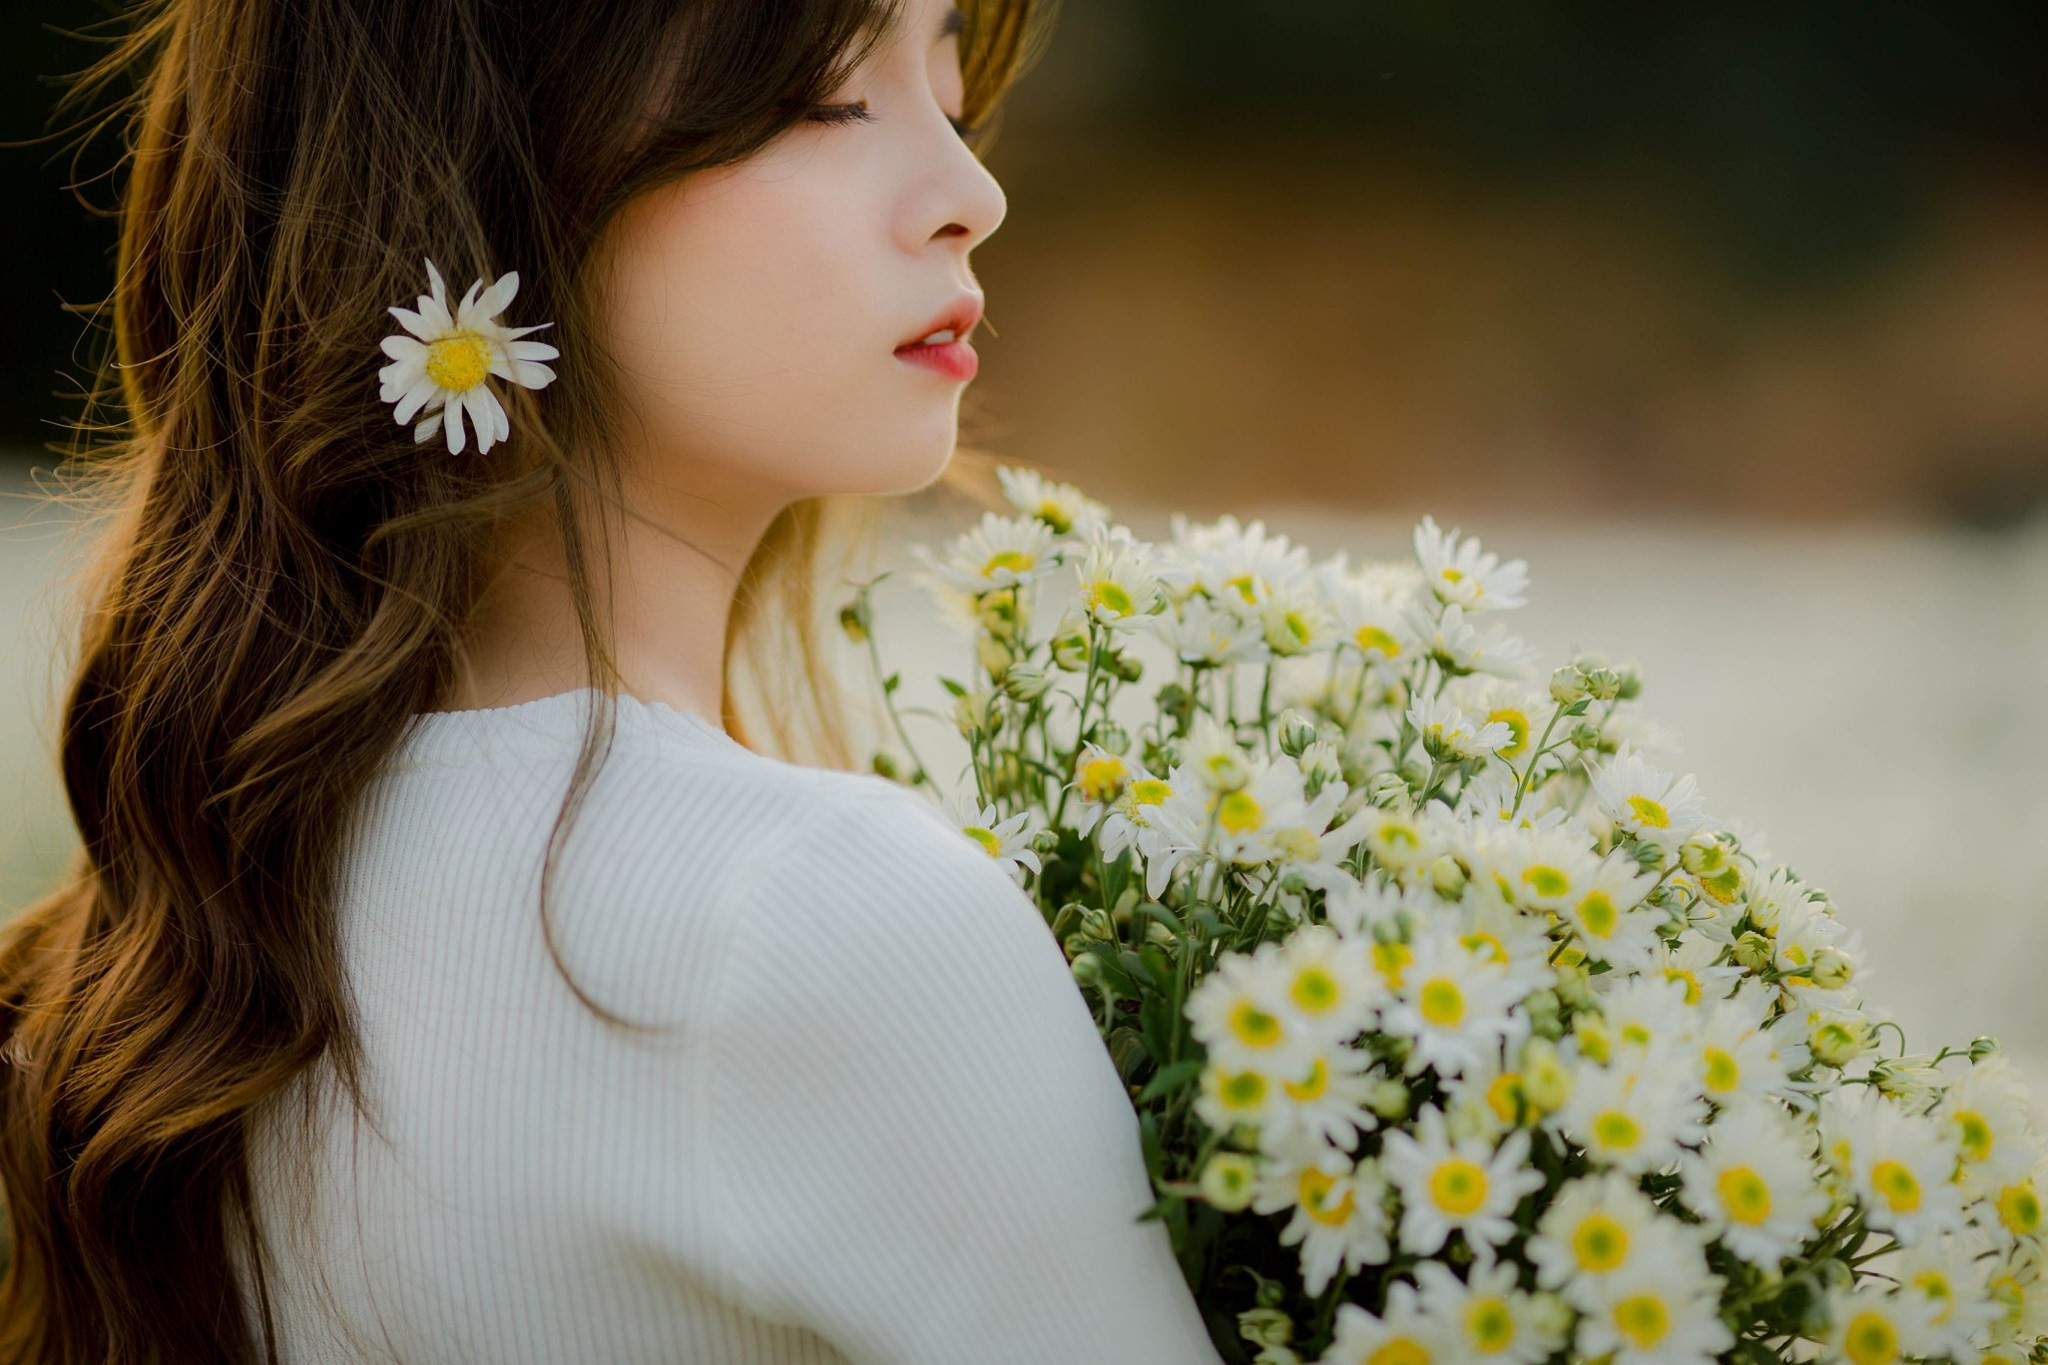 Ý nghĩa hoa cúc họa mi: Hoa cúc hoạ mi không chỉ đẹp mắt mà còn mang đến nhiều ý nghĩa đặc biệt. Đó là tình yêu, sự tự tin, tình bạn. Hãy cùng chiêm ngưỡng những đóa hoa cúc hoạ mi tuyệt đẹp và tìm hiểu thêm về sức mạnh ý nghĩa của chúng.